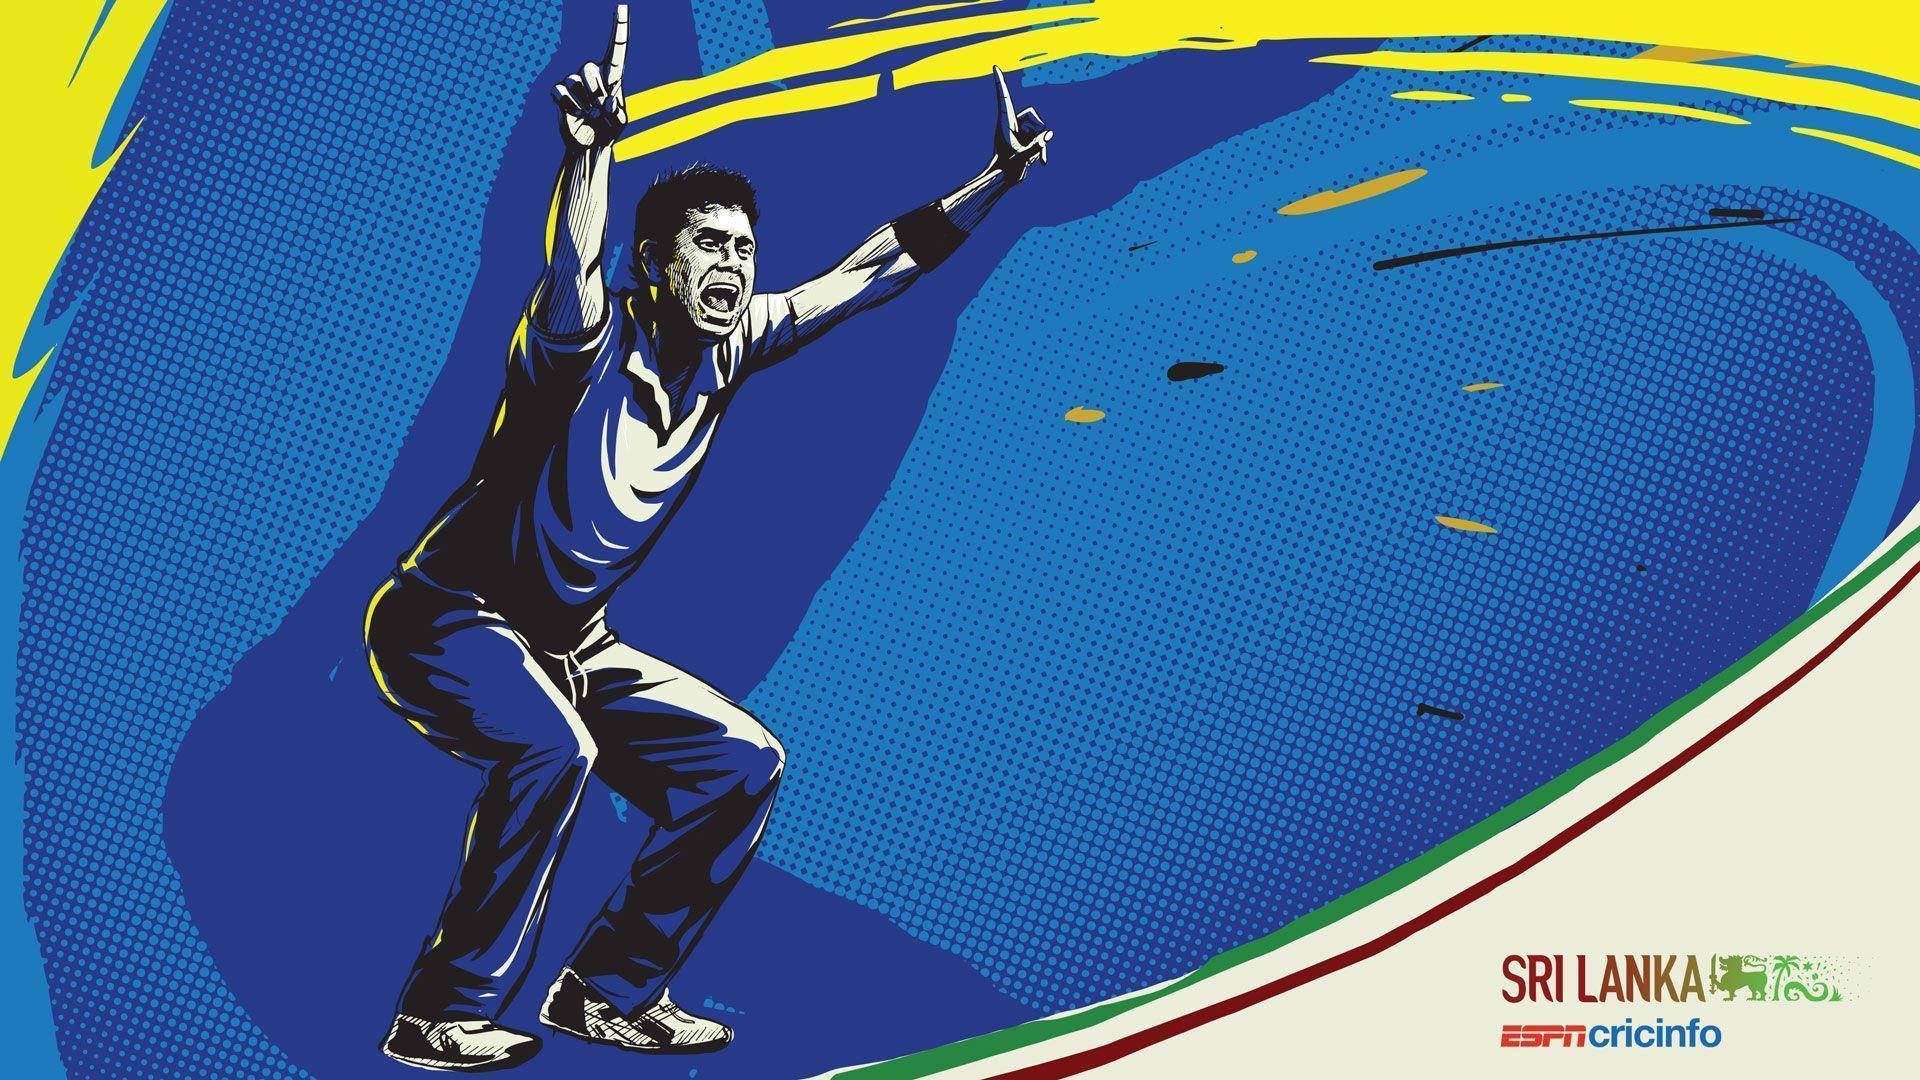 Sri Lanka Cricket Wallpaper